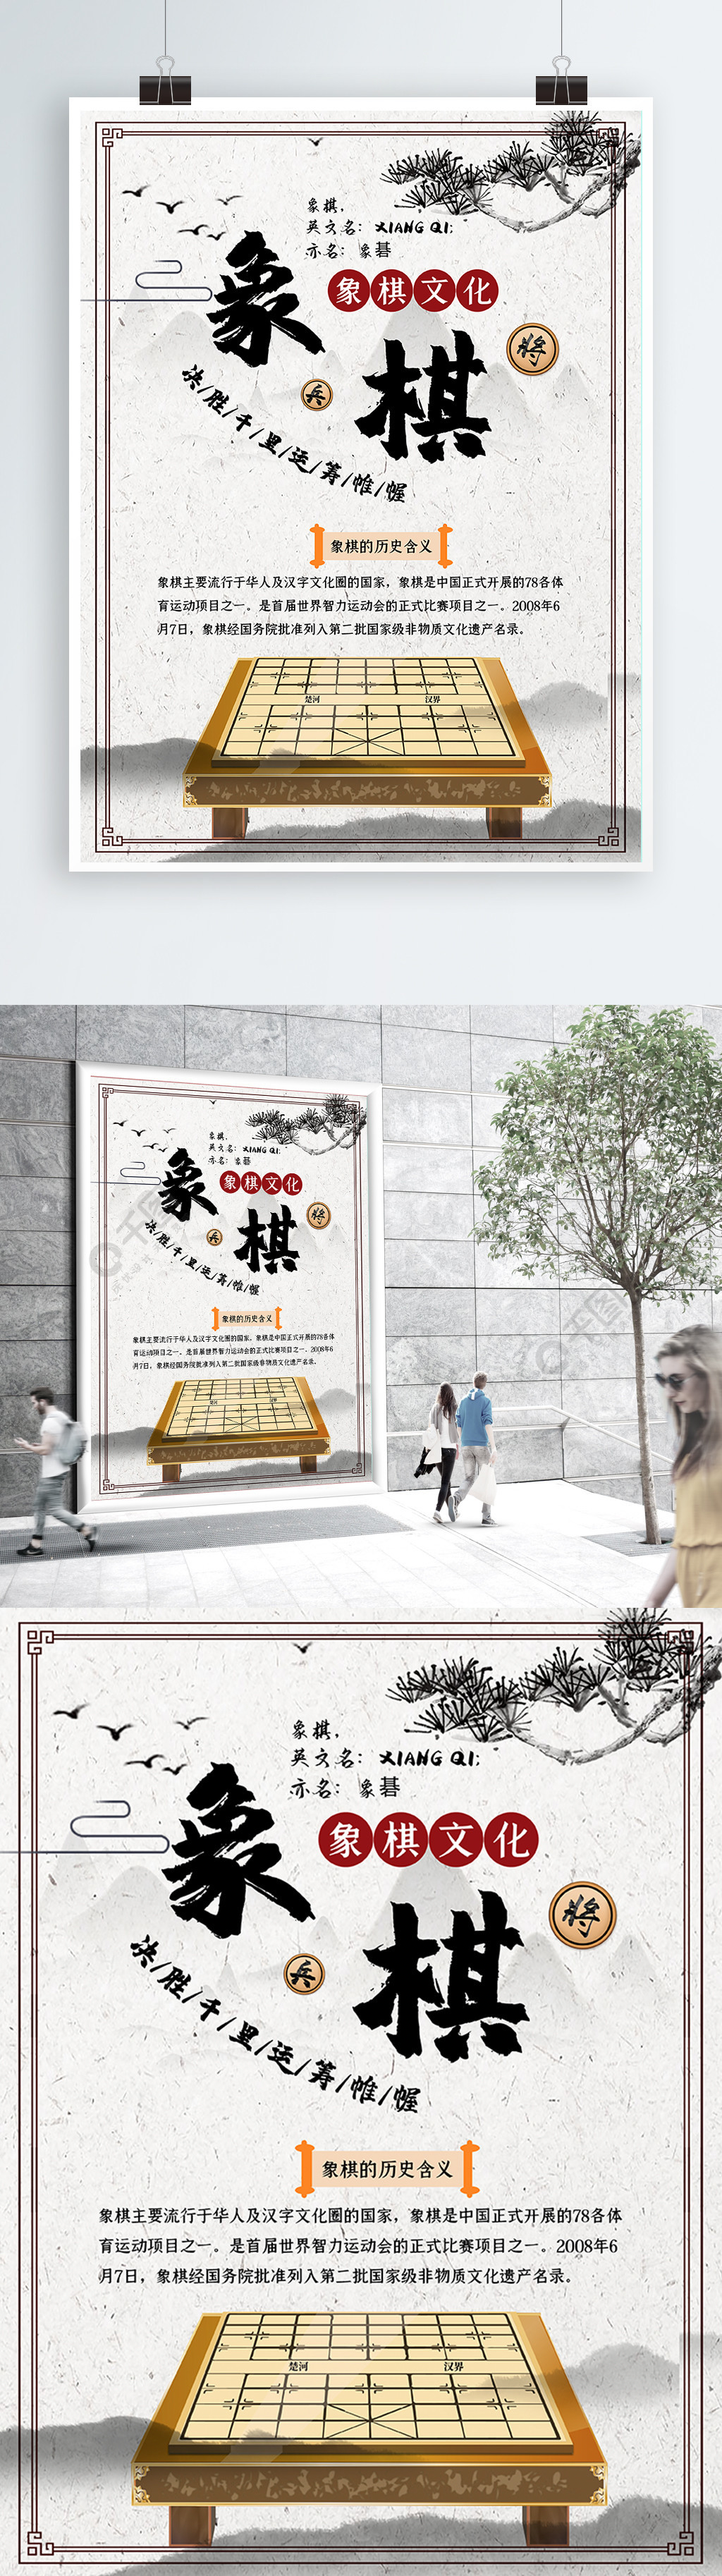 中国象棋比赛海报